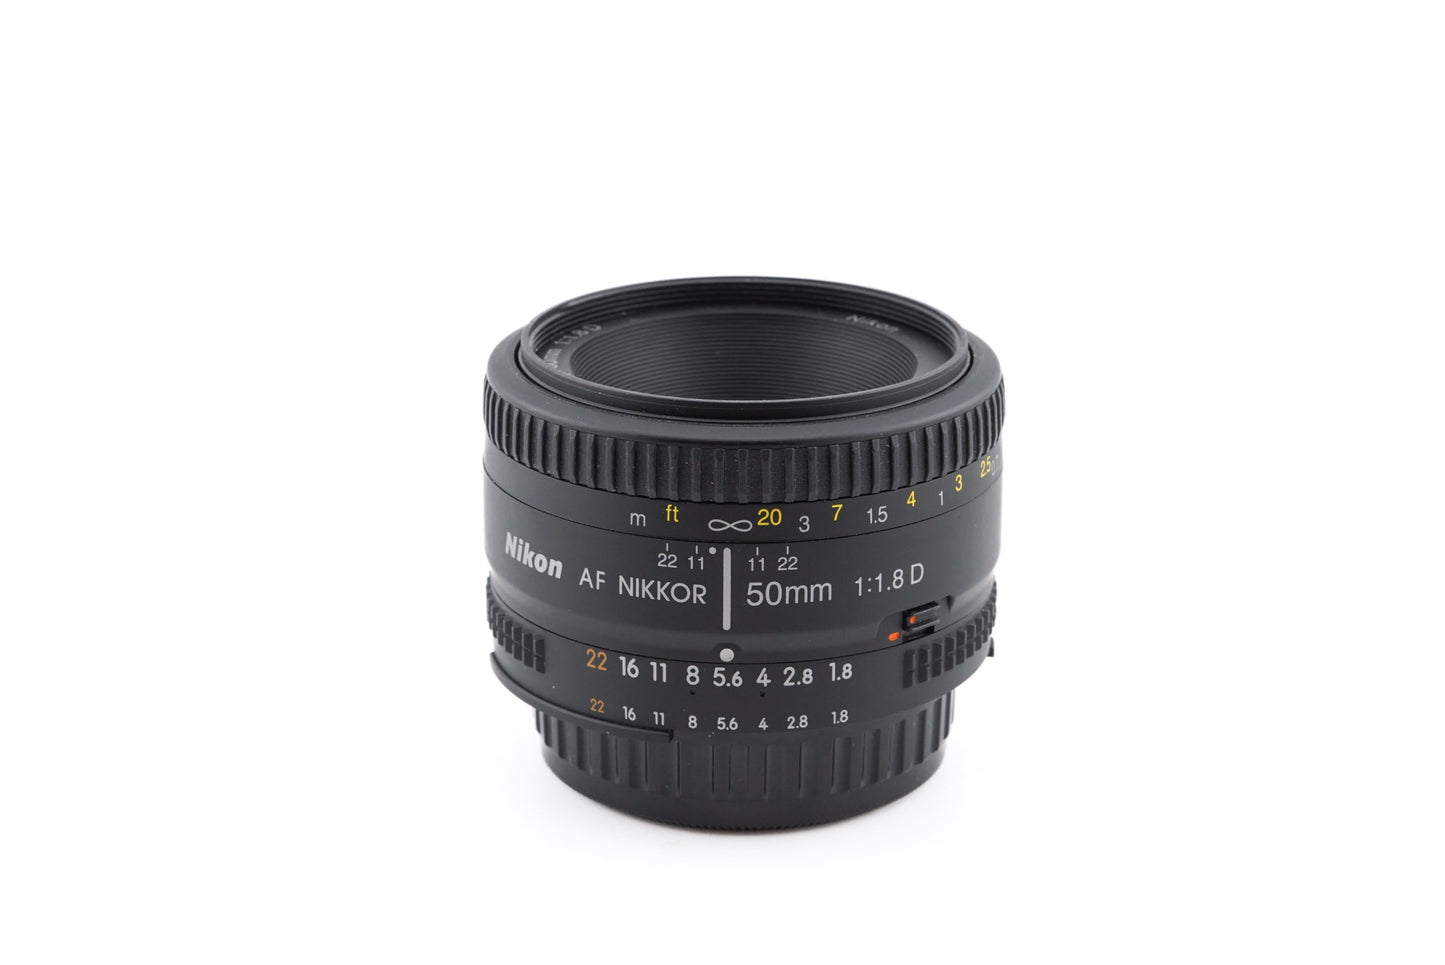 Nikon 50mm f1.8 D AF Nikkor - Lens